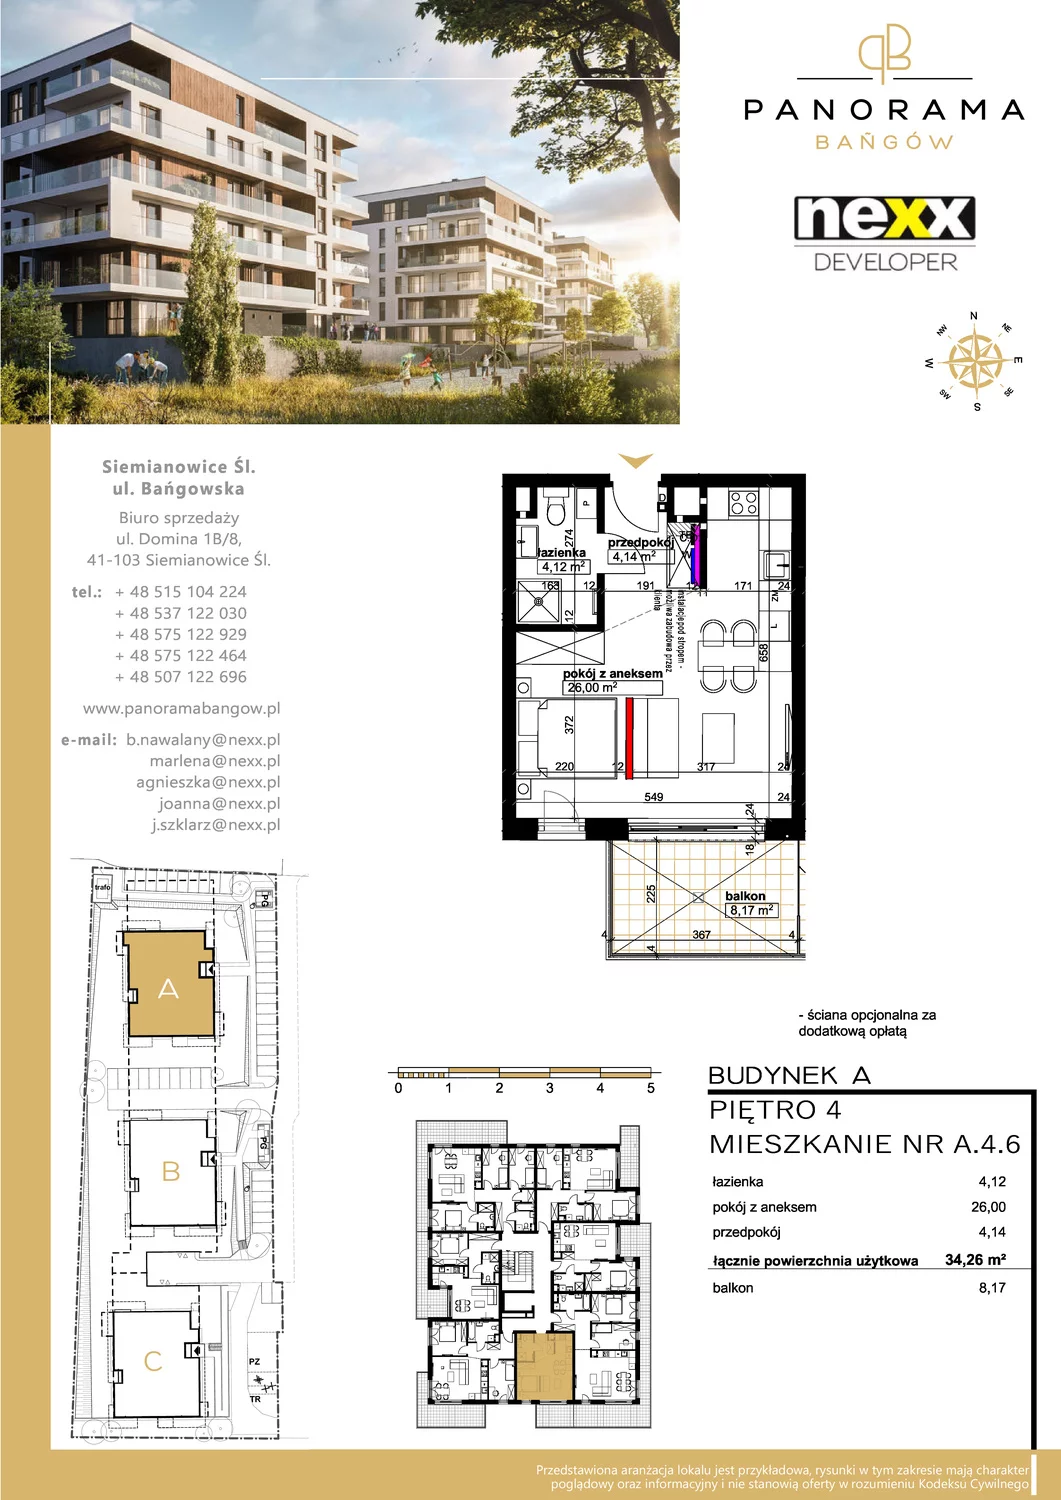 Mieszkanie 34,26 m², piętro 4, oferta nr A 4.6, Panorama Bańgów, Siemianowice Śląskie, Bańgów, ul. Bańgowska